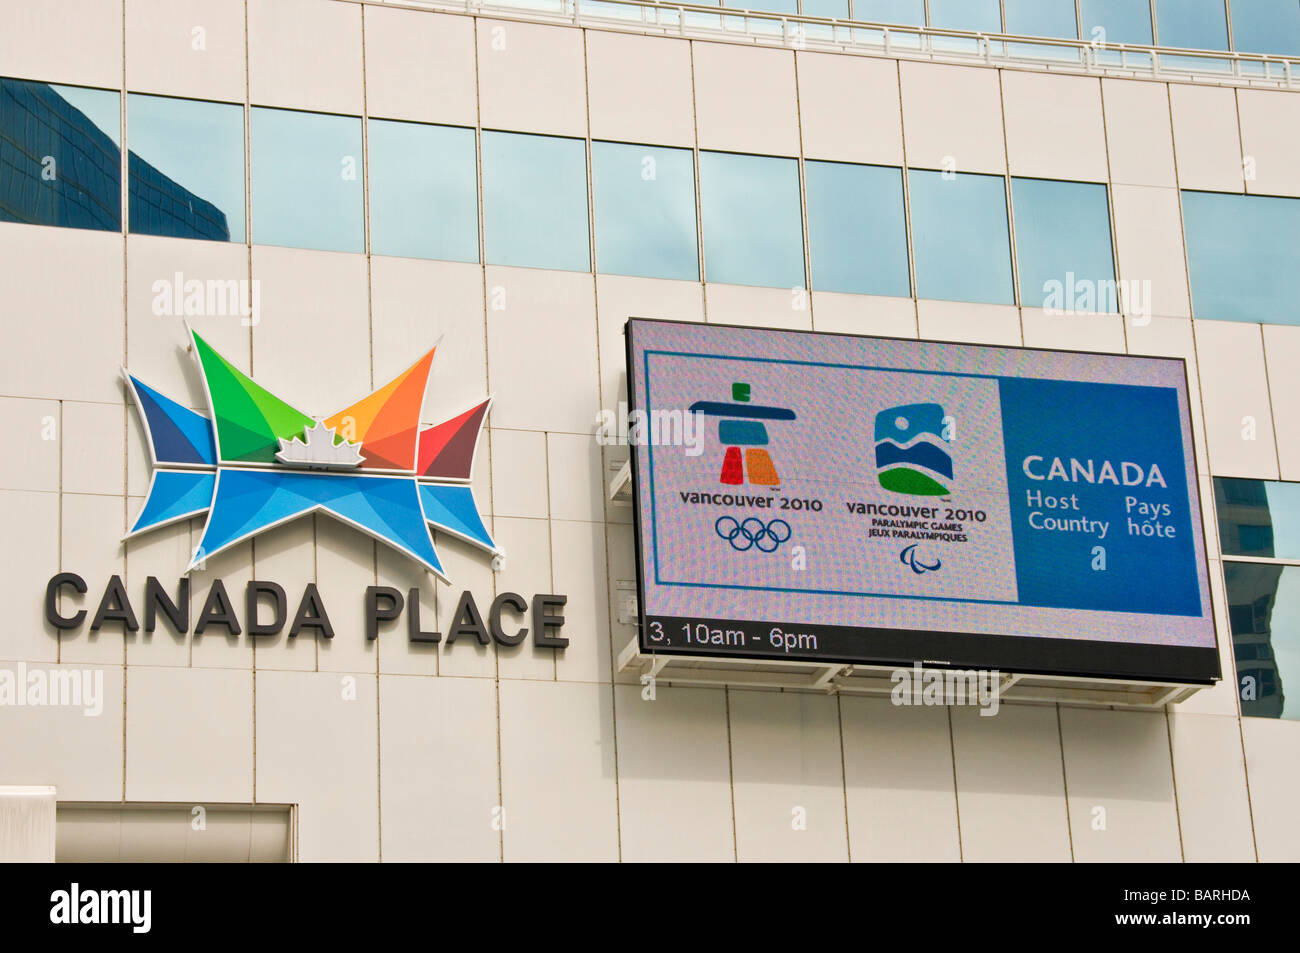 Le centre-ville de Vancouver Canada Place avec un panneau interactif favorisant les jeux olympiques d'hiver qui auront lieu en 2010 dans la cit Banque D'Images